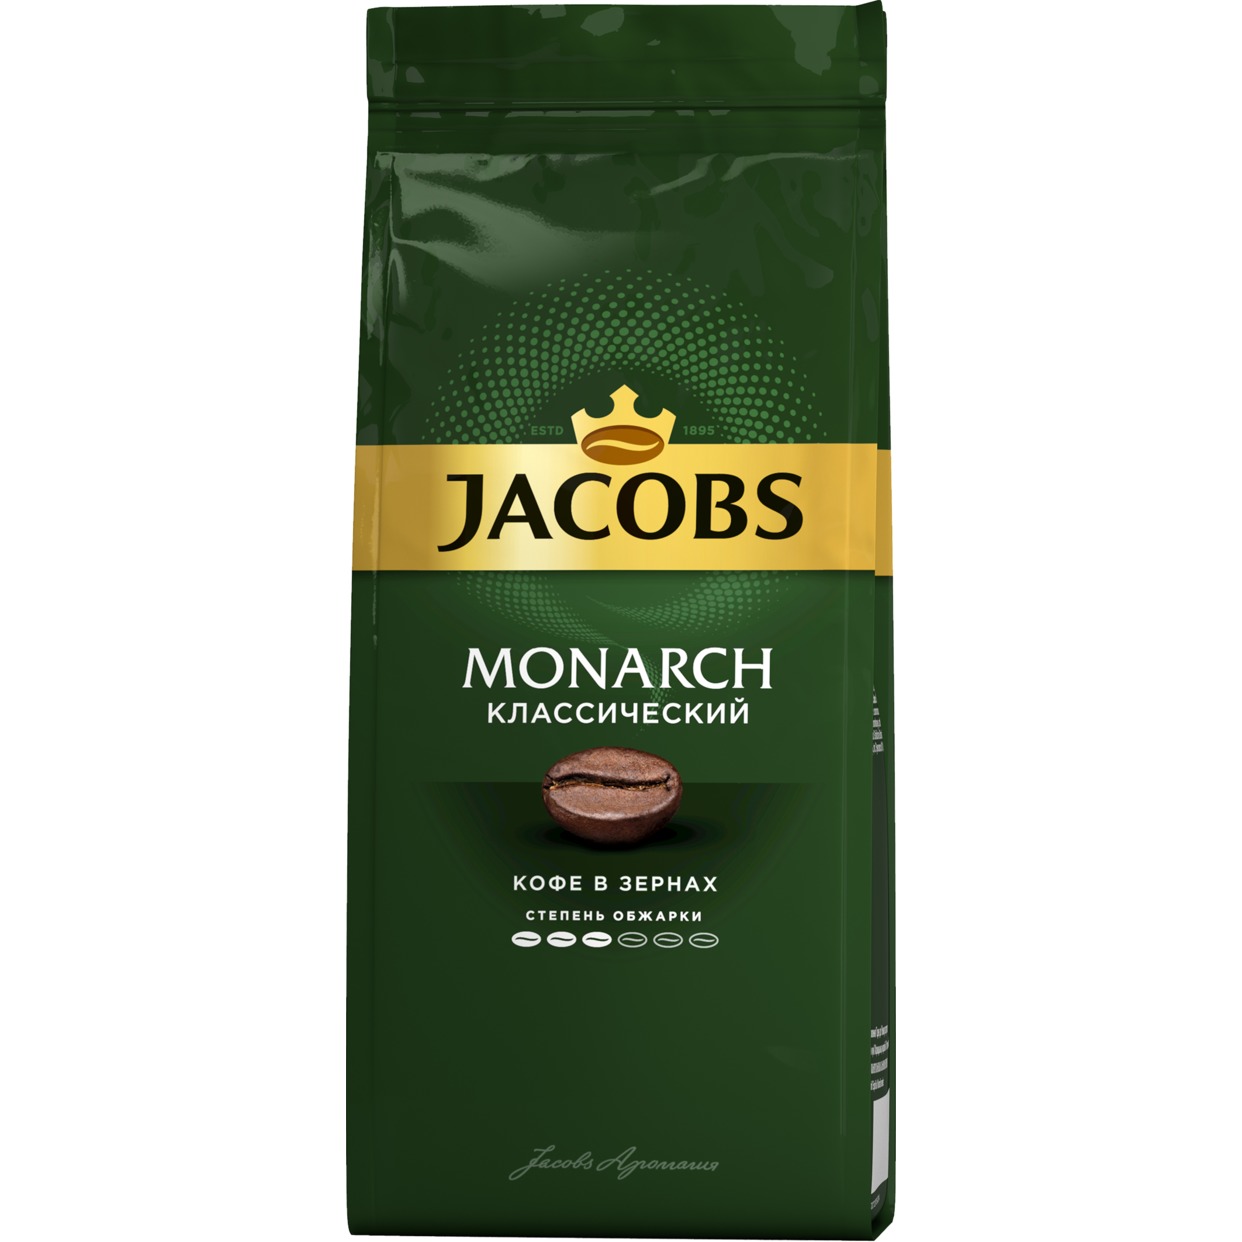 Кофе Jacobs Monarch, Классический, в зернах, 230 г по акции в Пятерочке